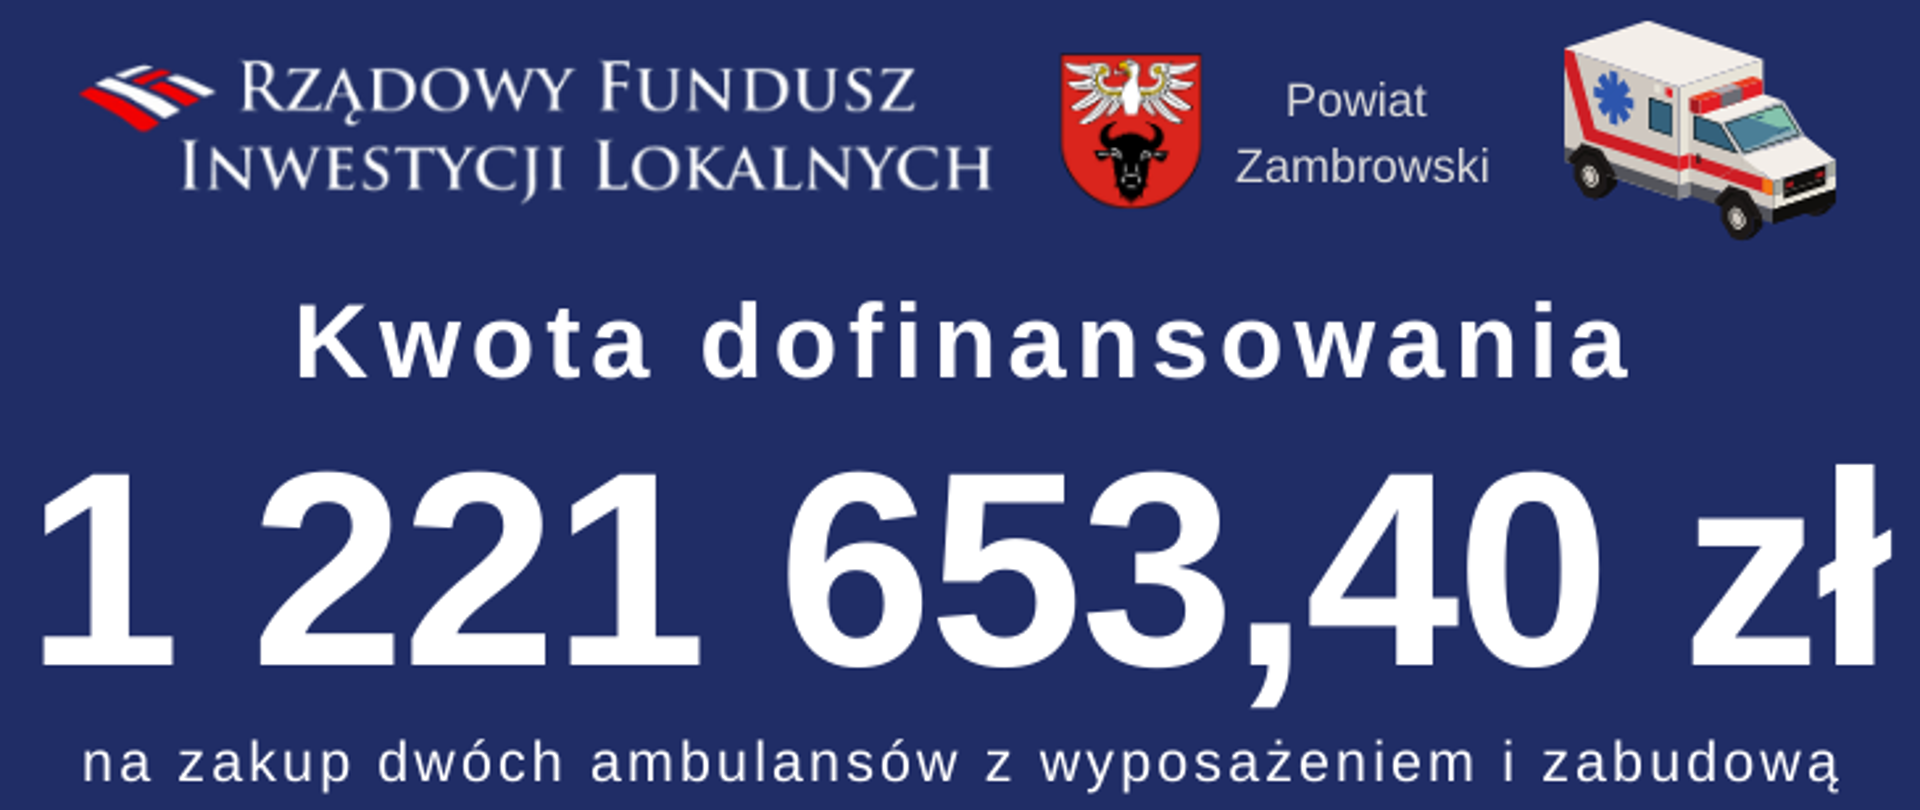 na zdjęciu znajduje się logotyp Rządowego Funduszu Inwestycji Lokalnych oraz Powiatu Zambrowskiego, a także napis " Kwota dofinansowania 1 221 653,40 zł na zakup dwóch ambulansów z wyposażeniem i zabudową"